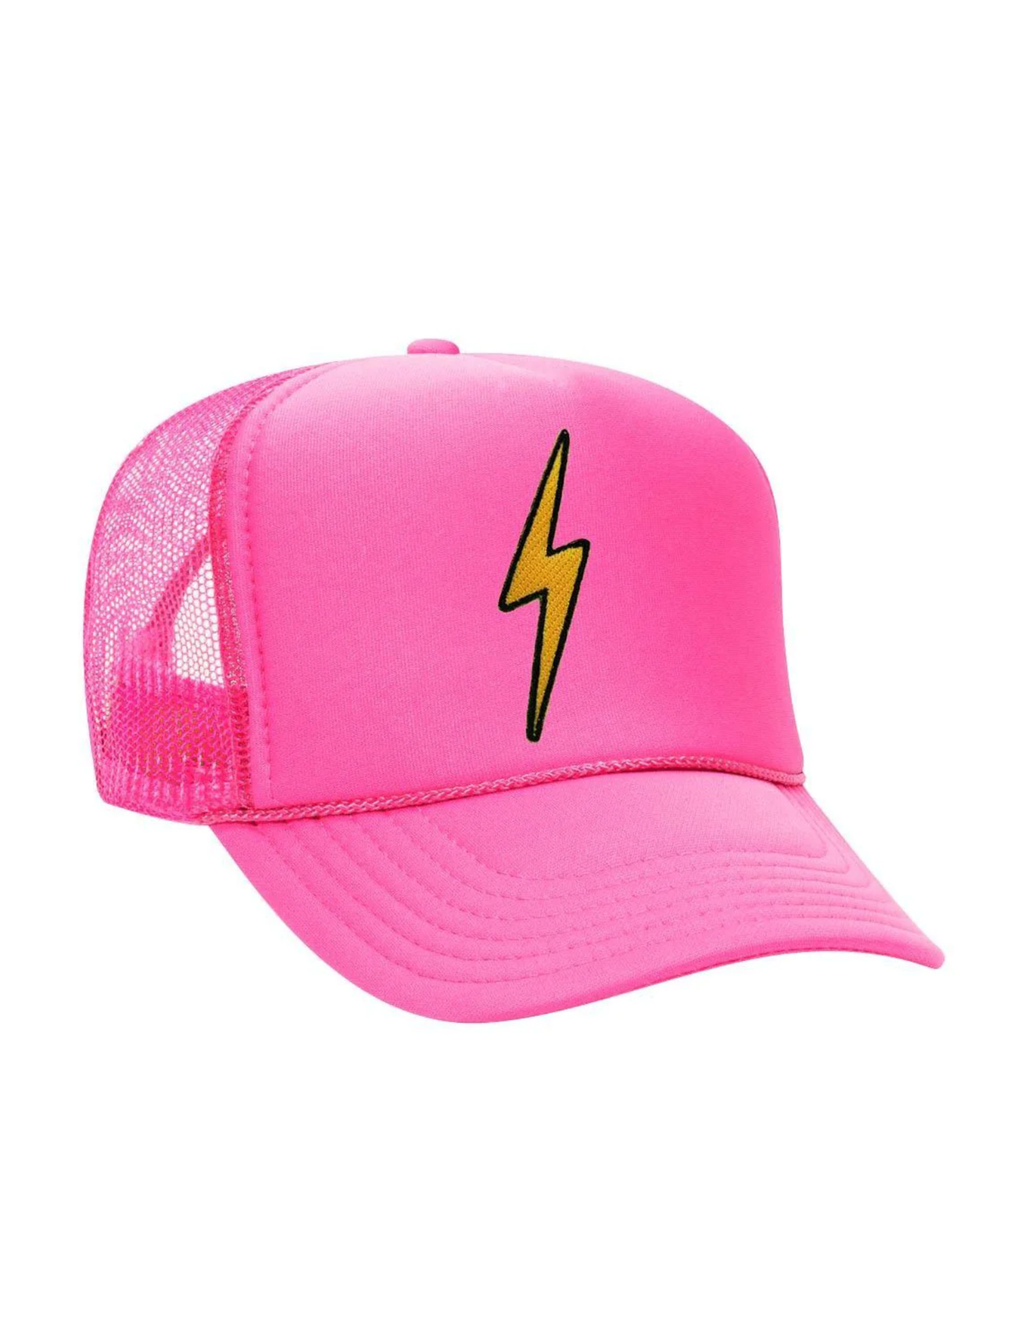 Bolt Vintage Trucker Hat, Neon Pink